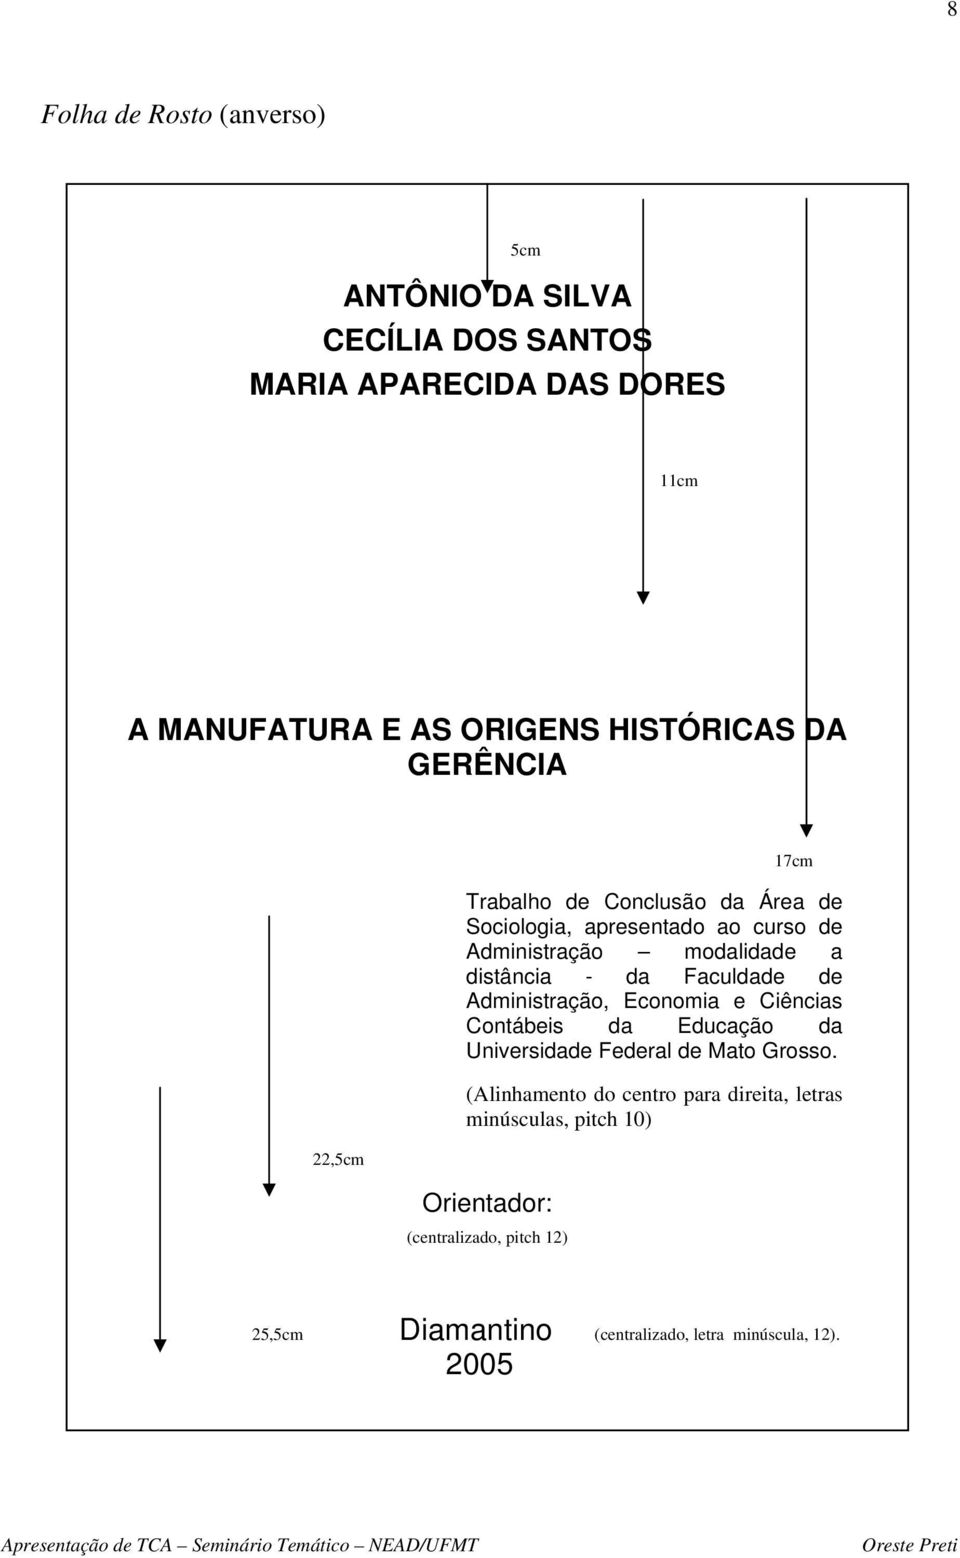 Faculdade de Administração, Economia e Ciências Contábeis da Educação da Universidade Federal de Mato Grosso.